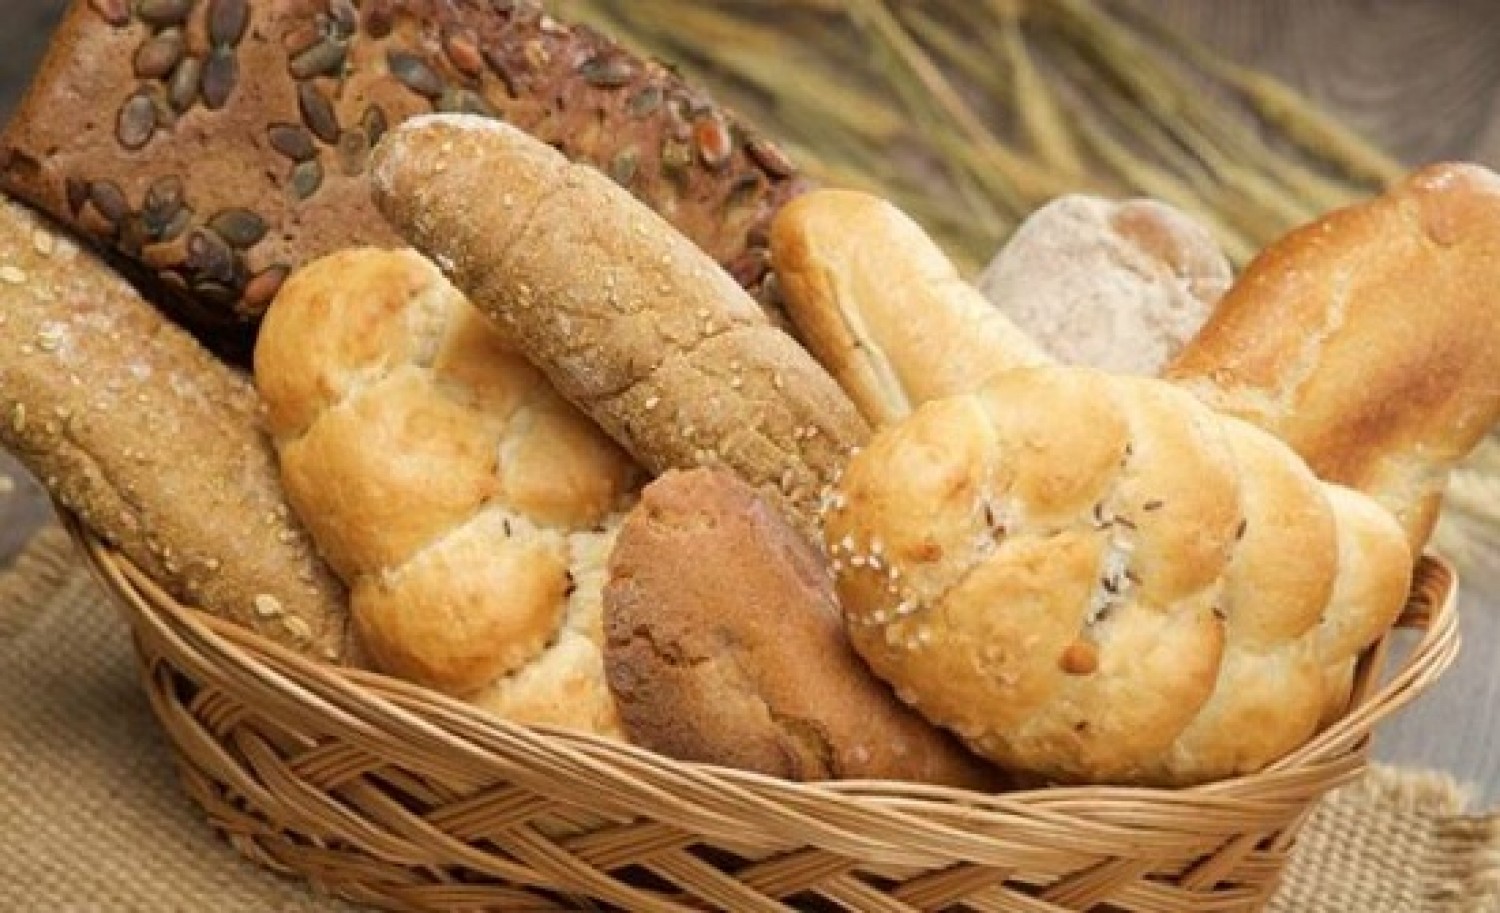 إليك 5 طرق للمحافظة على الخبز طازجاً لأطول فترة